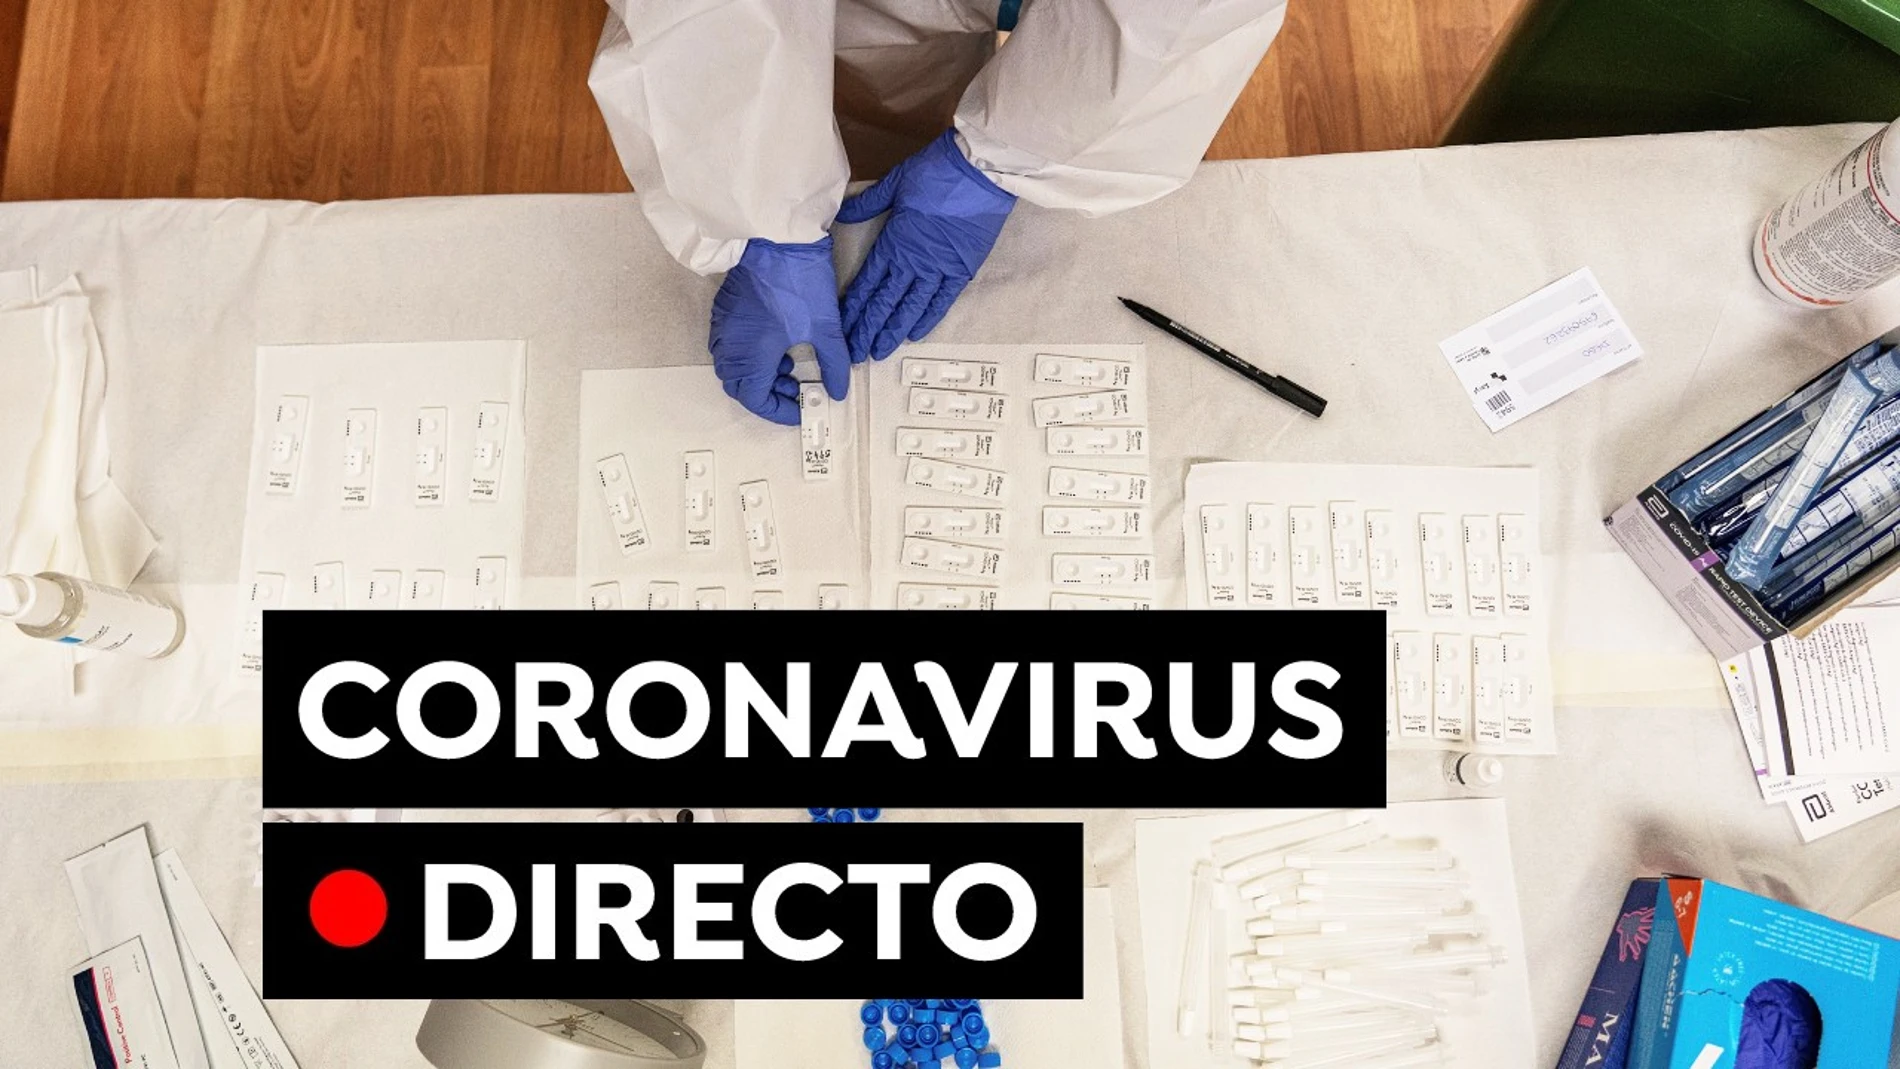 COVID-19 Última hora: Segunda dosis de la vacuna AstraZeneca y Pfizer hoy | Coronavirus en Madrid y resto de CCAA